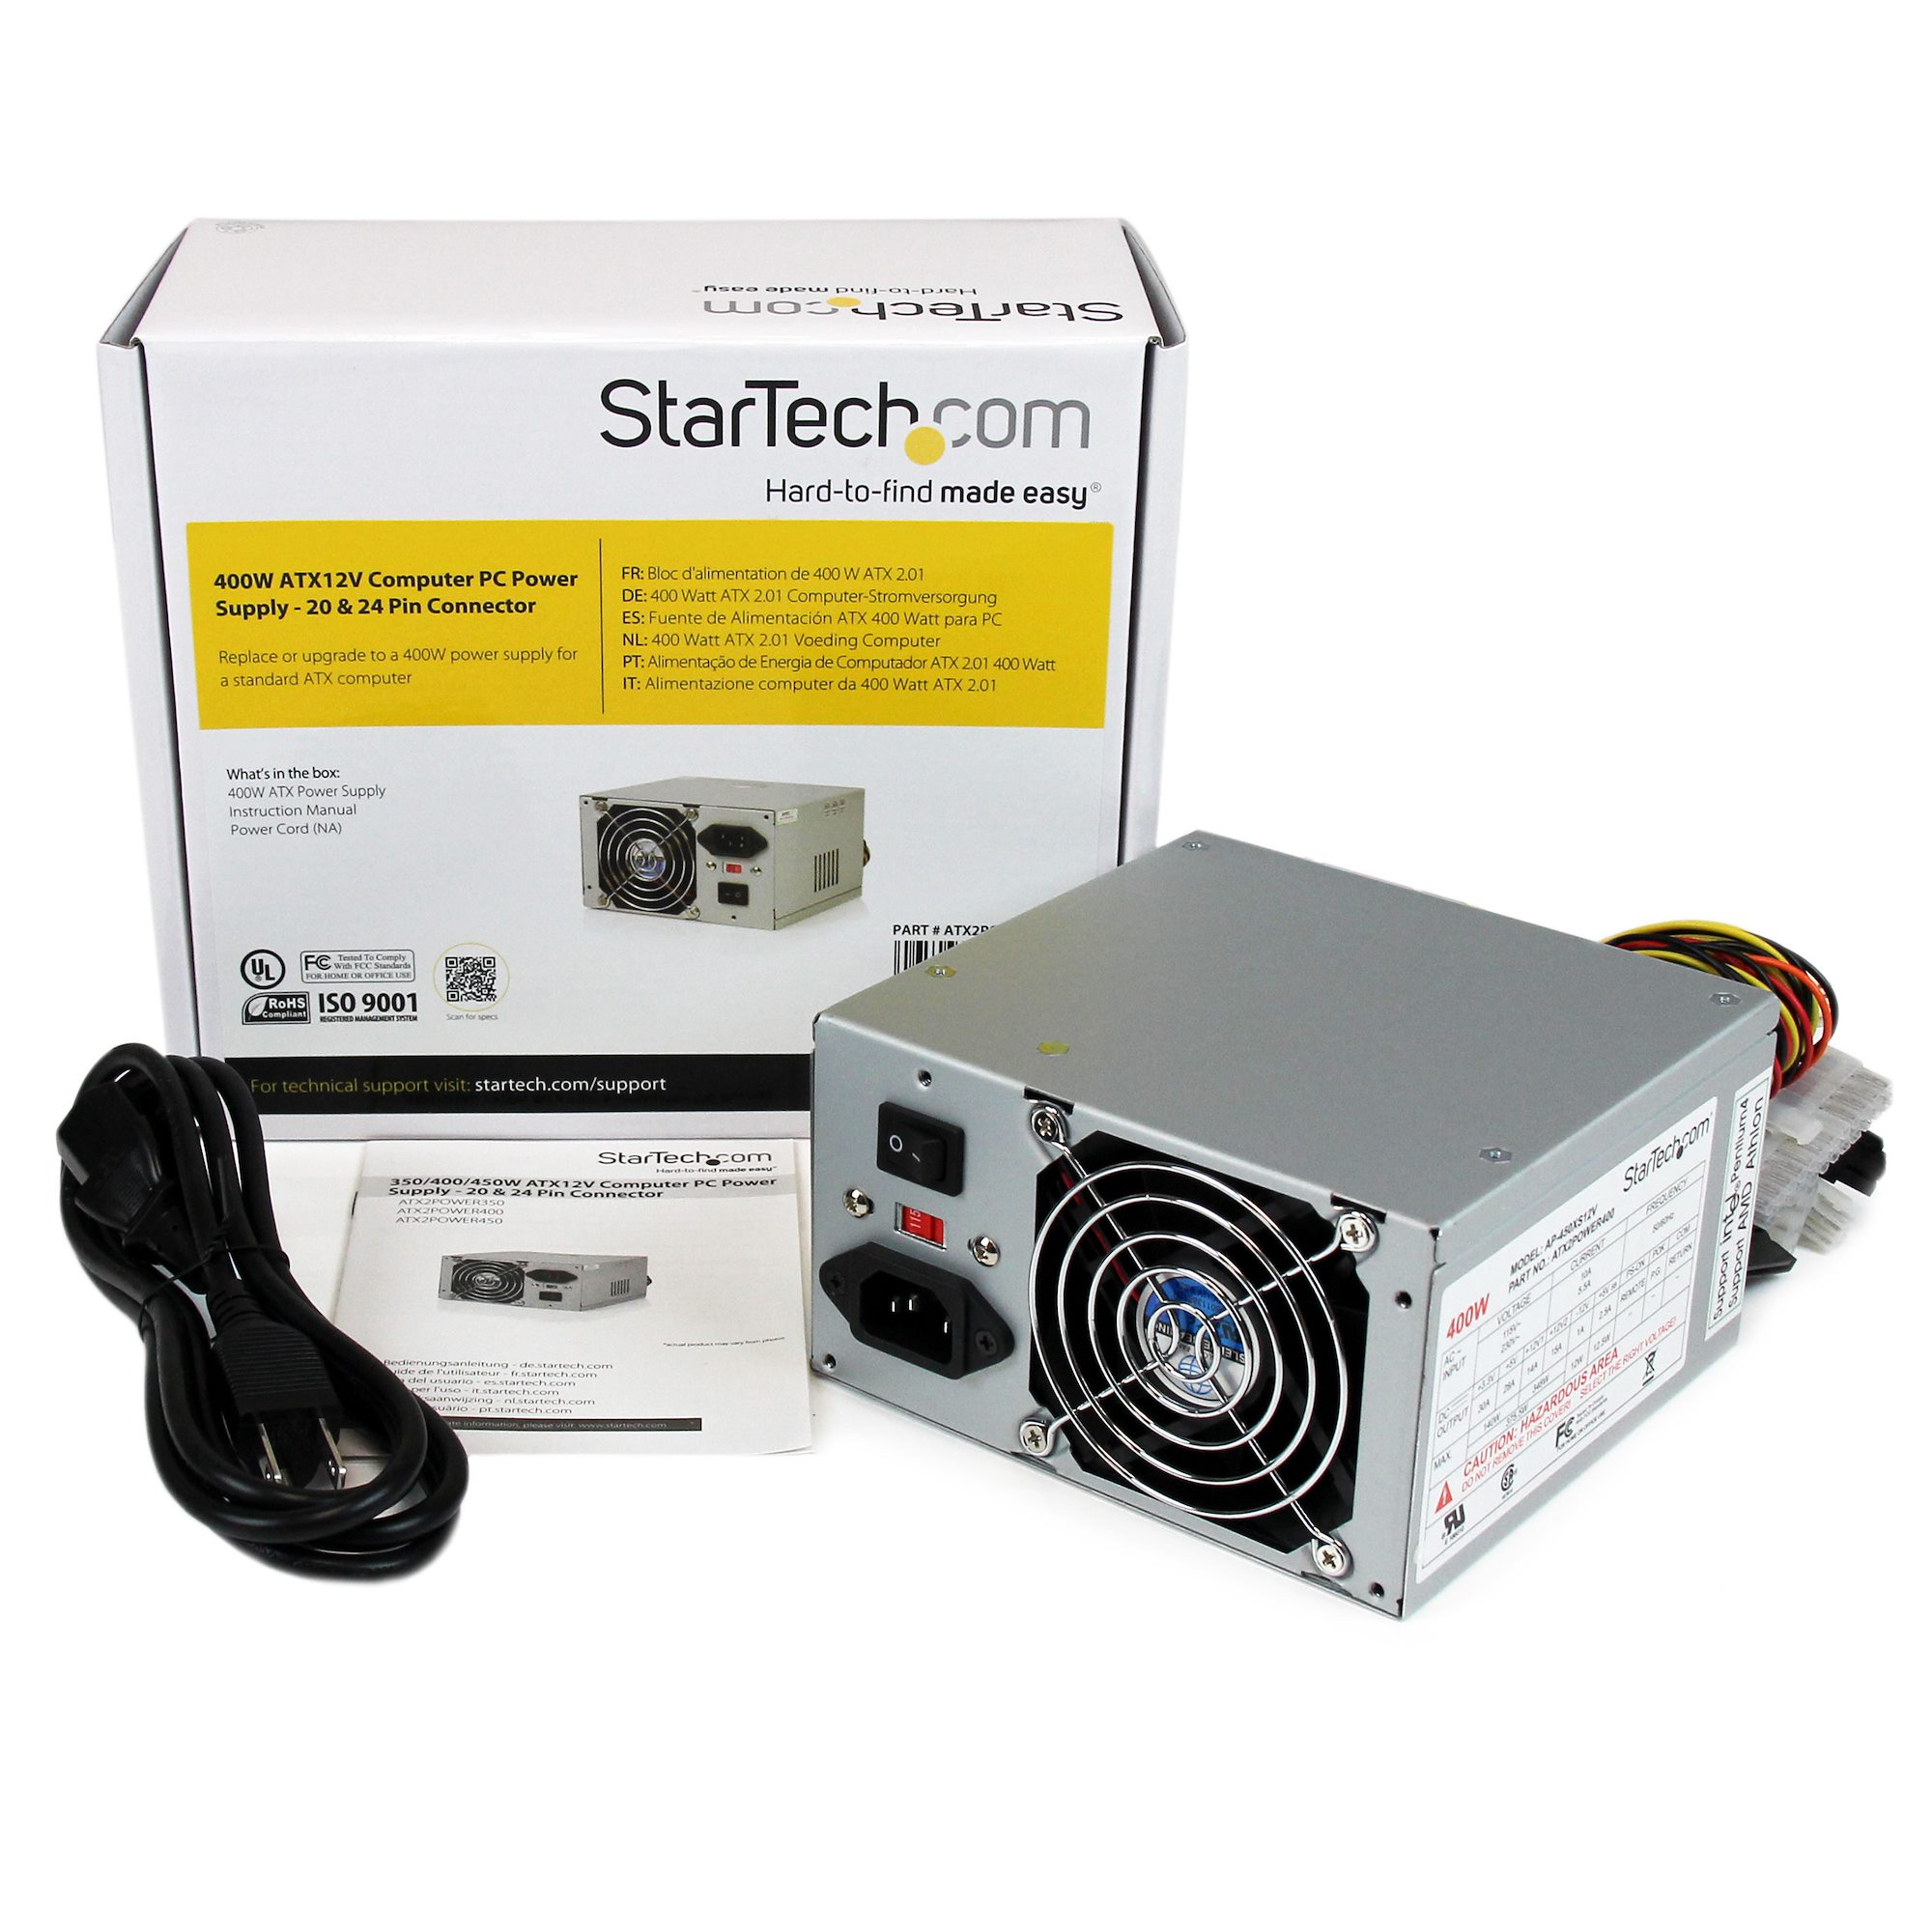 400W ATX Computer Power Supply - ATX Power Supplies | StarTech.com